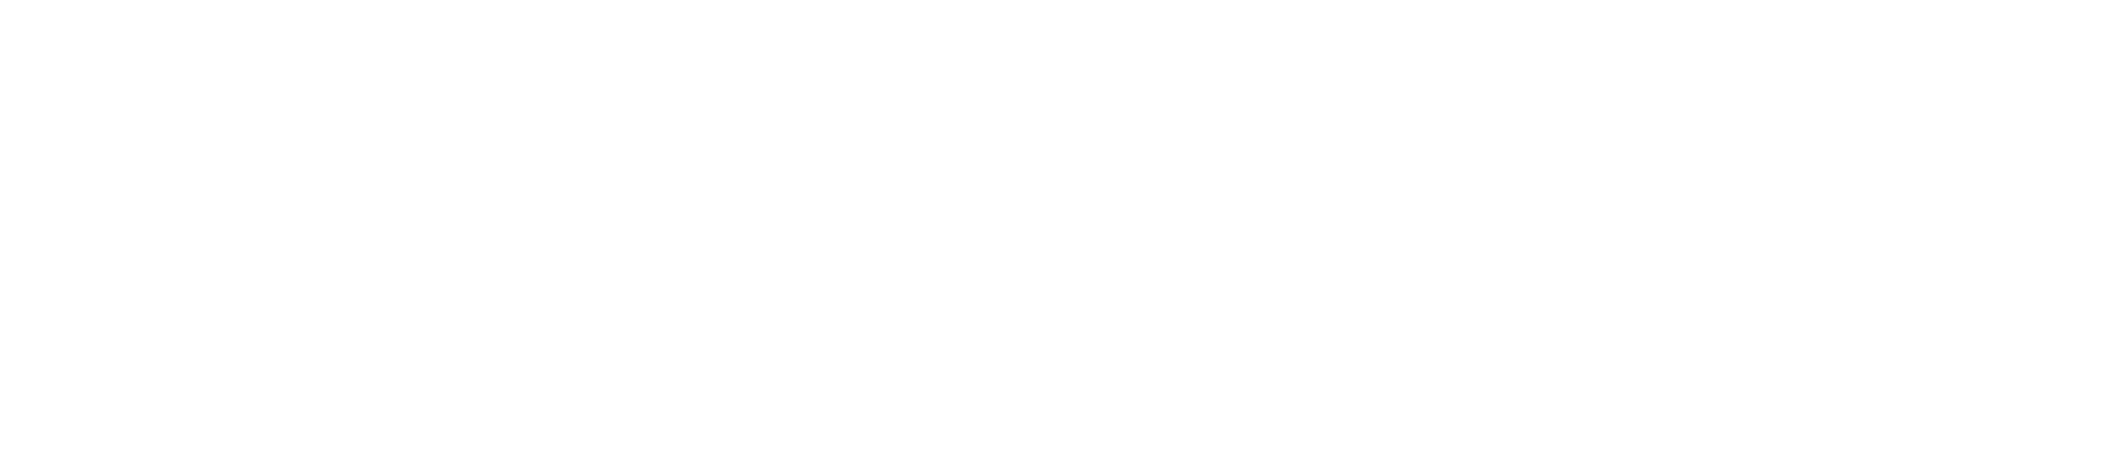 SUSAN STING Logo